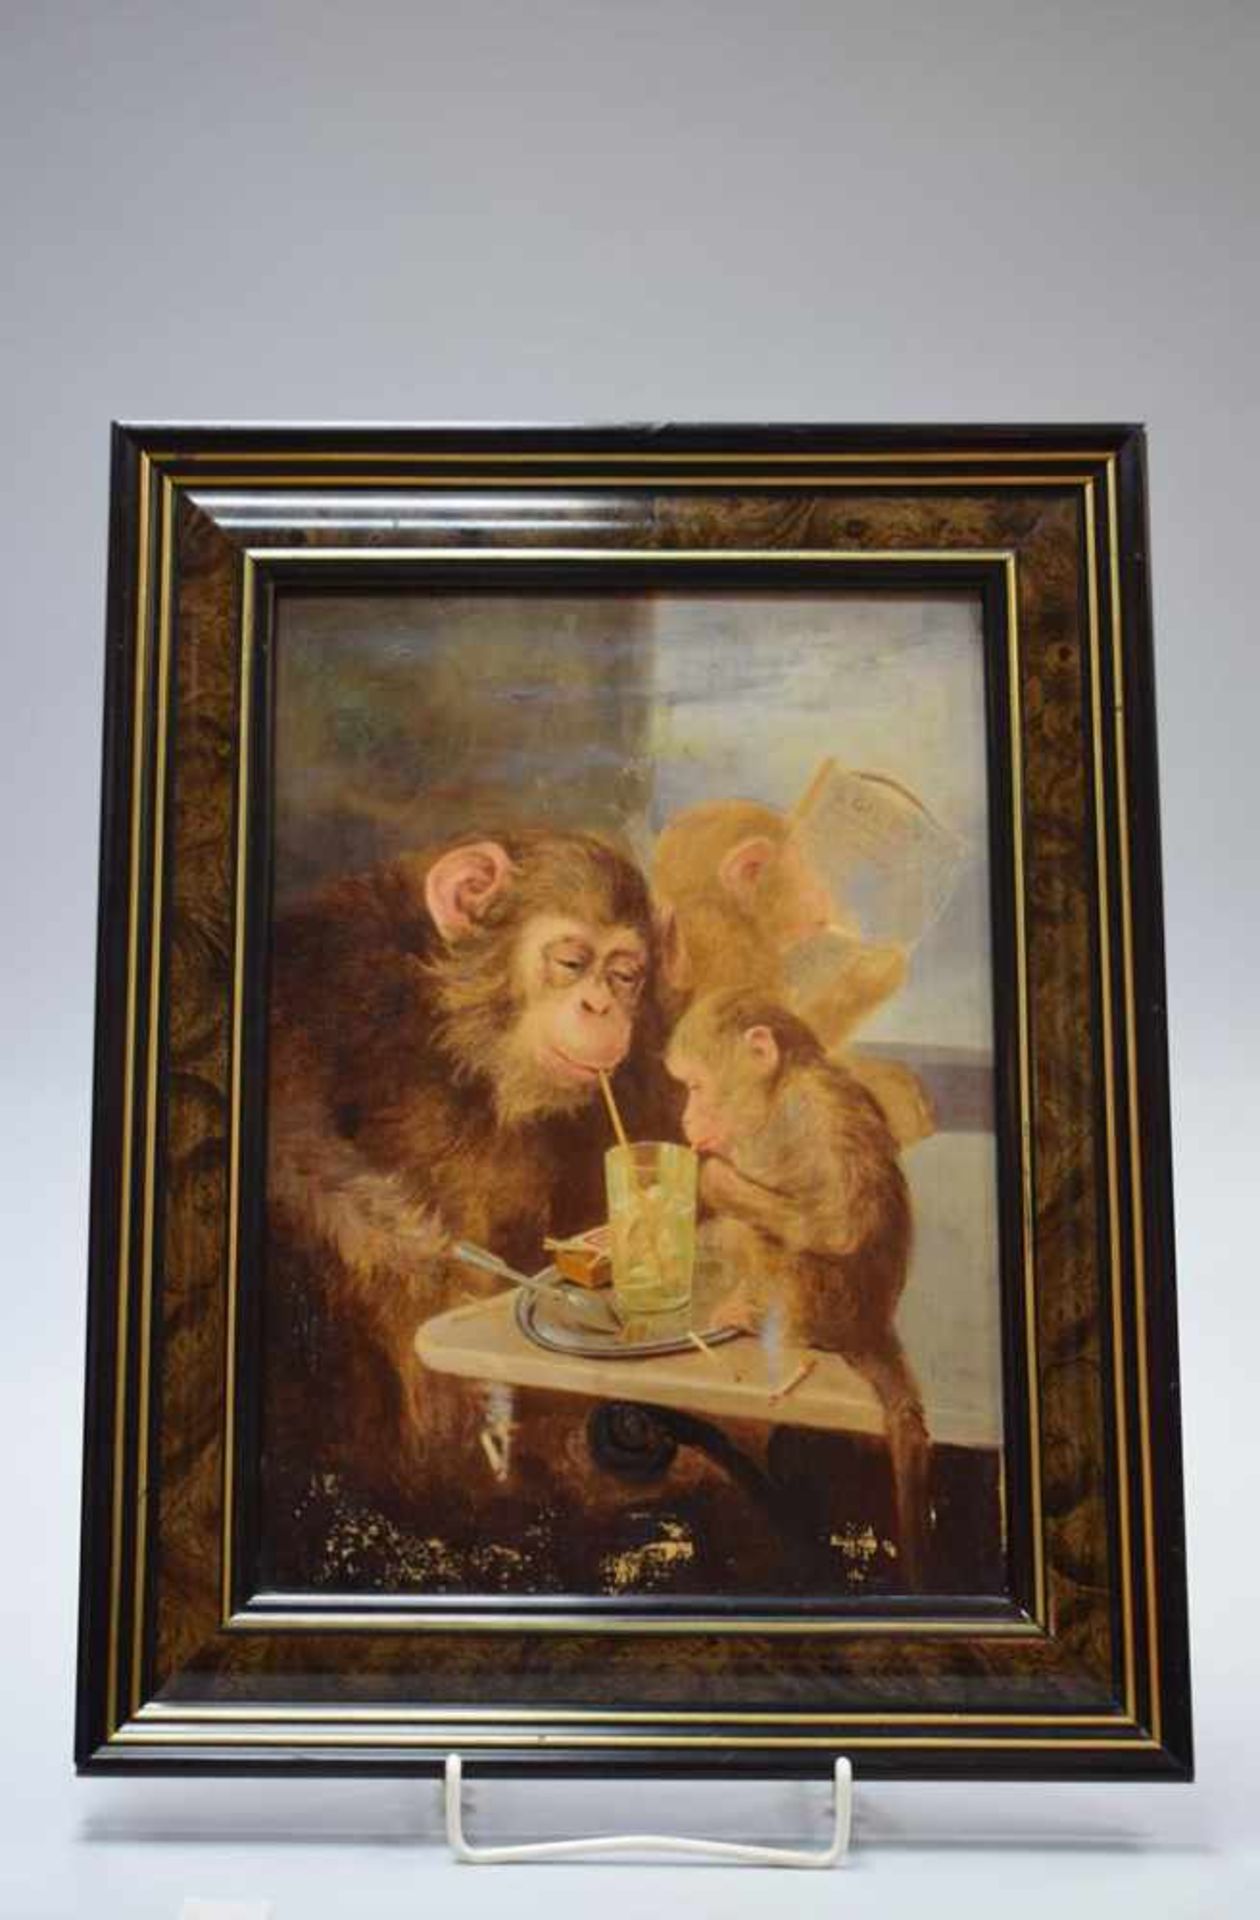 Anonymer Französischer Künstler des 19.Jh. "Die Affengruppe"Öl auf Leinwand, Alter 19.Jh. Signiert